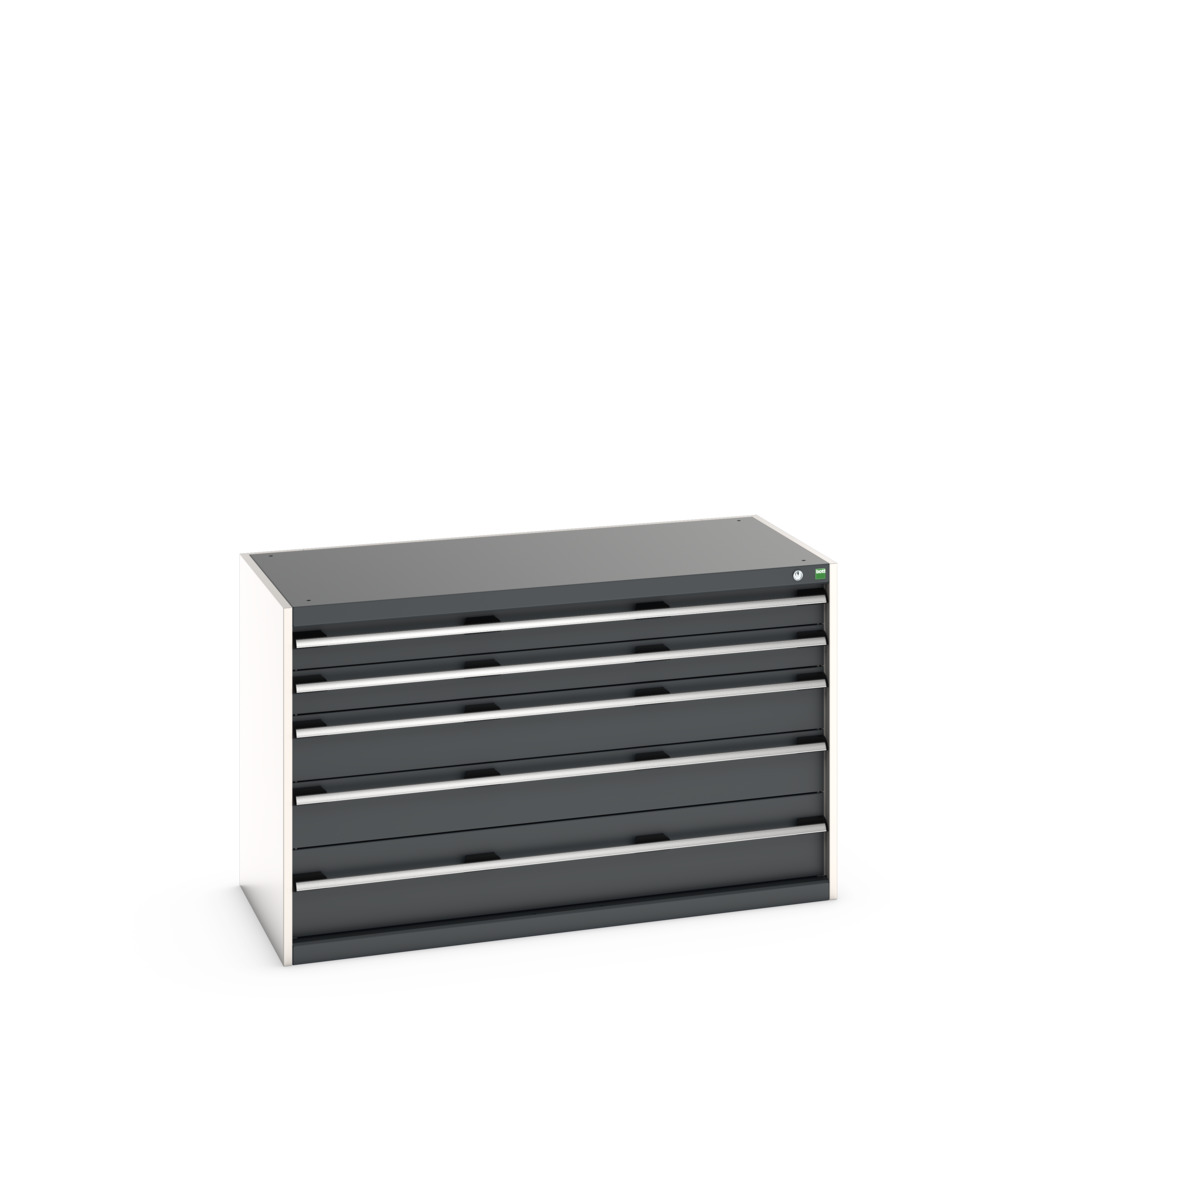 40022108.19V - cubio drawer cabinet